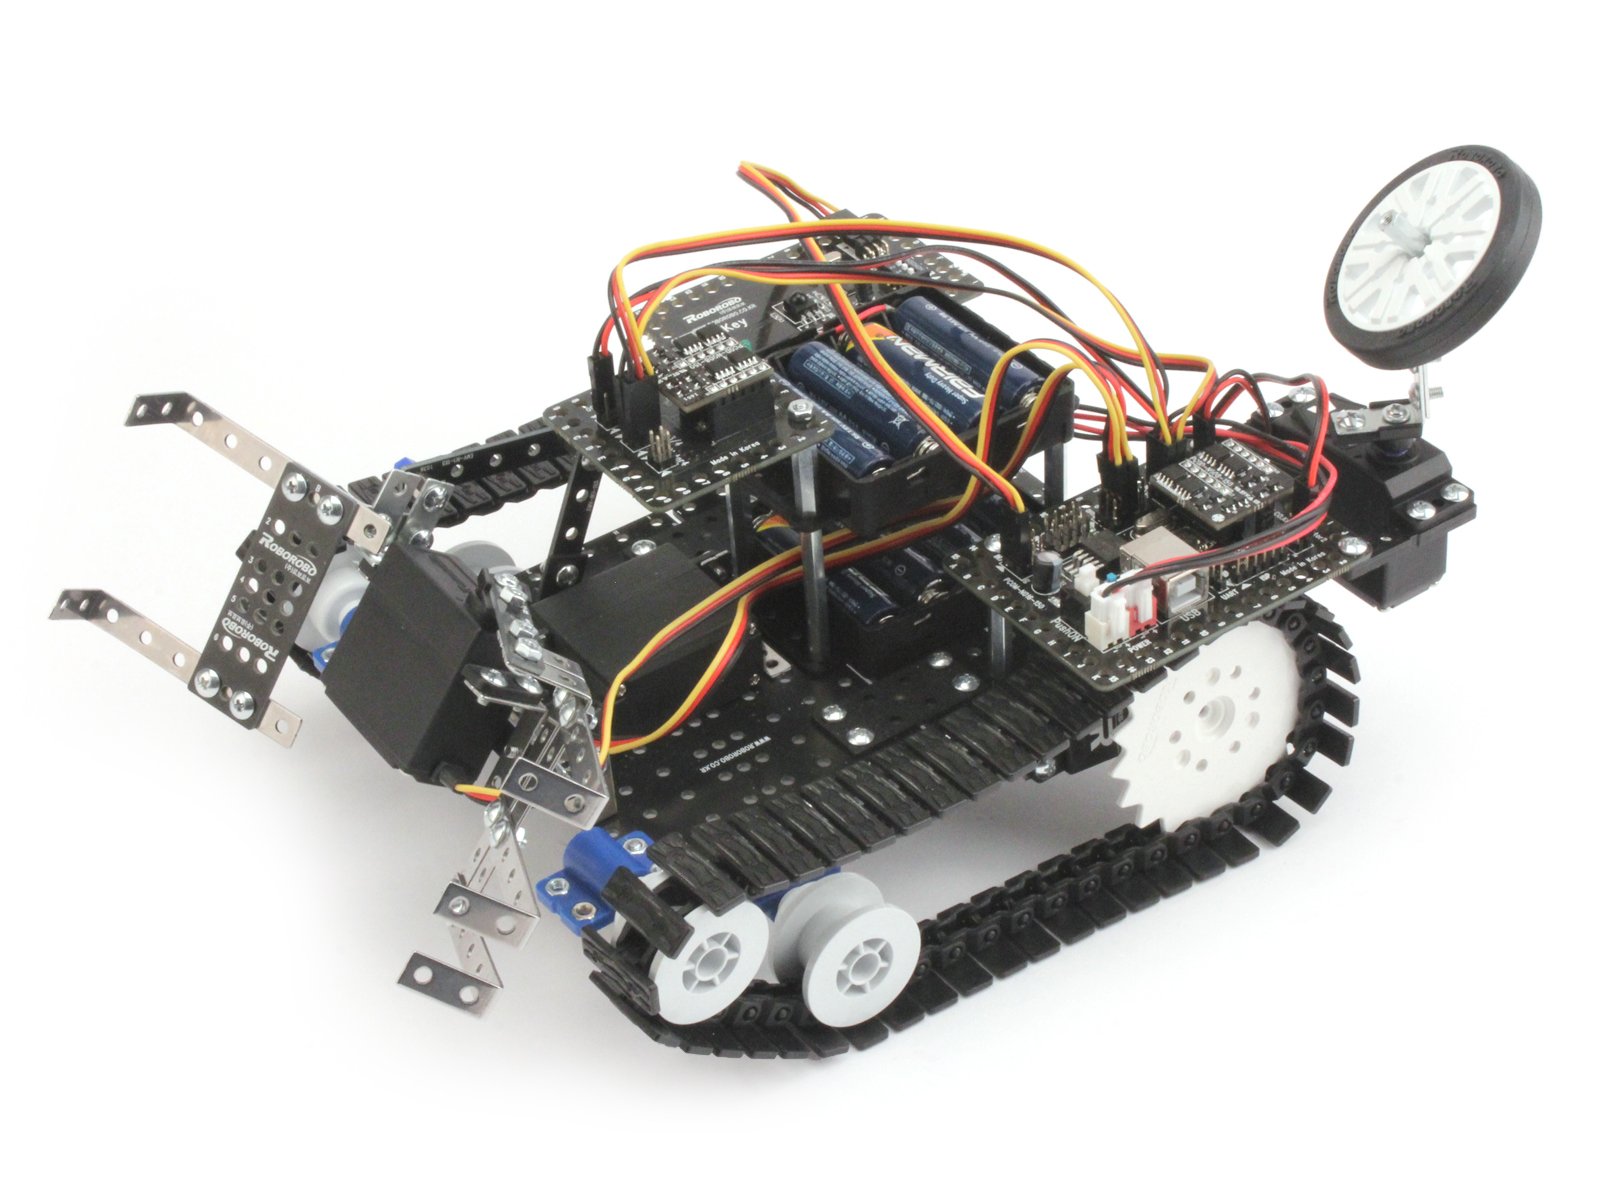 Исследовательский робототехнический набор для изучения основ схемотехники, механики и организации проектной деятельности Robo kit 4